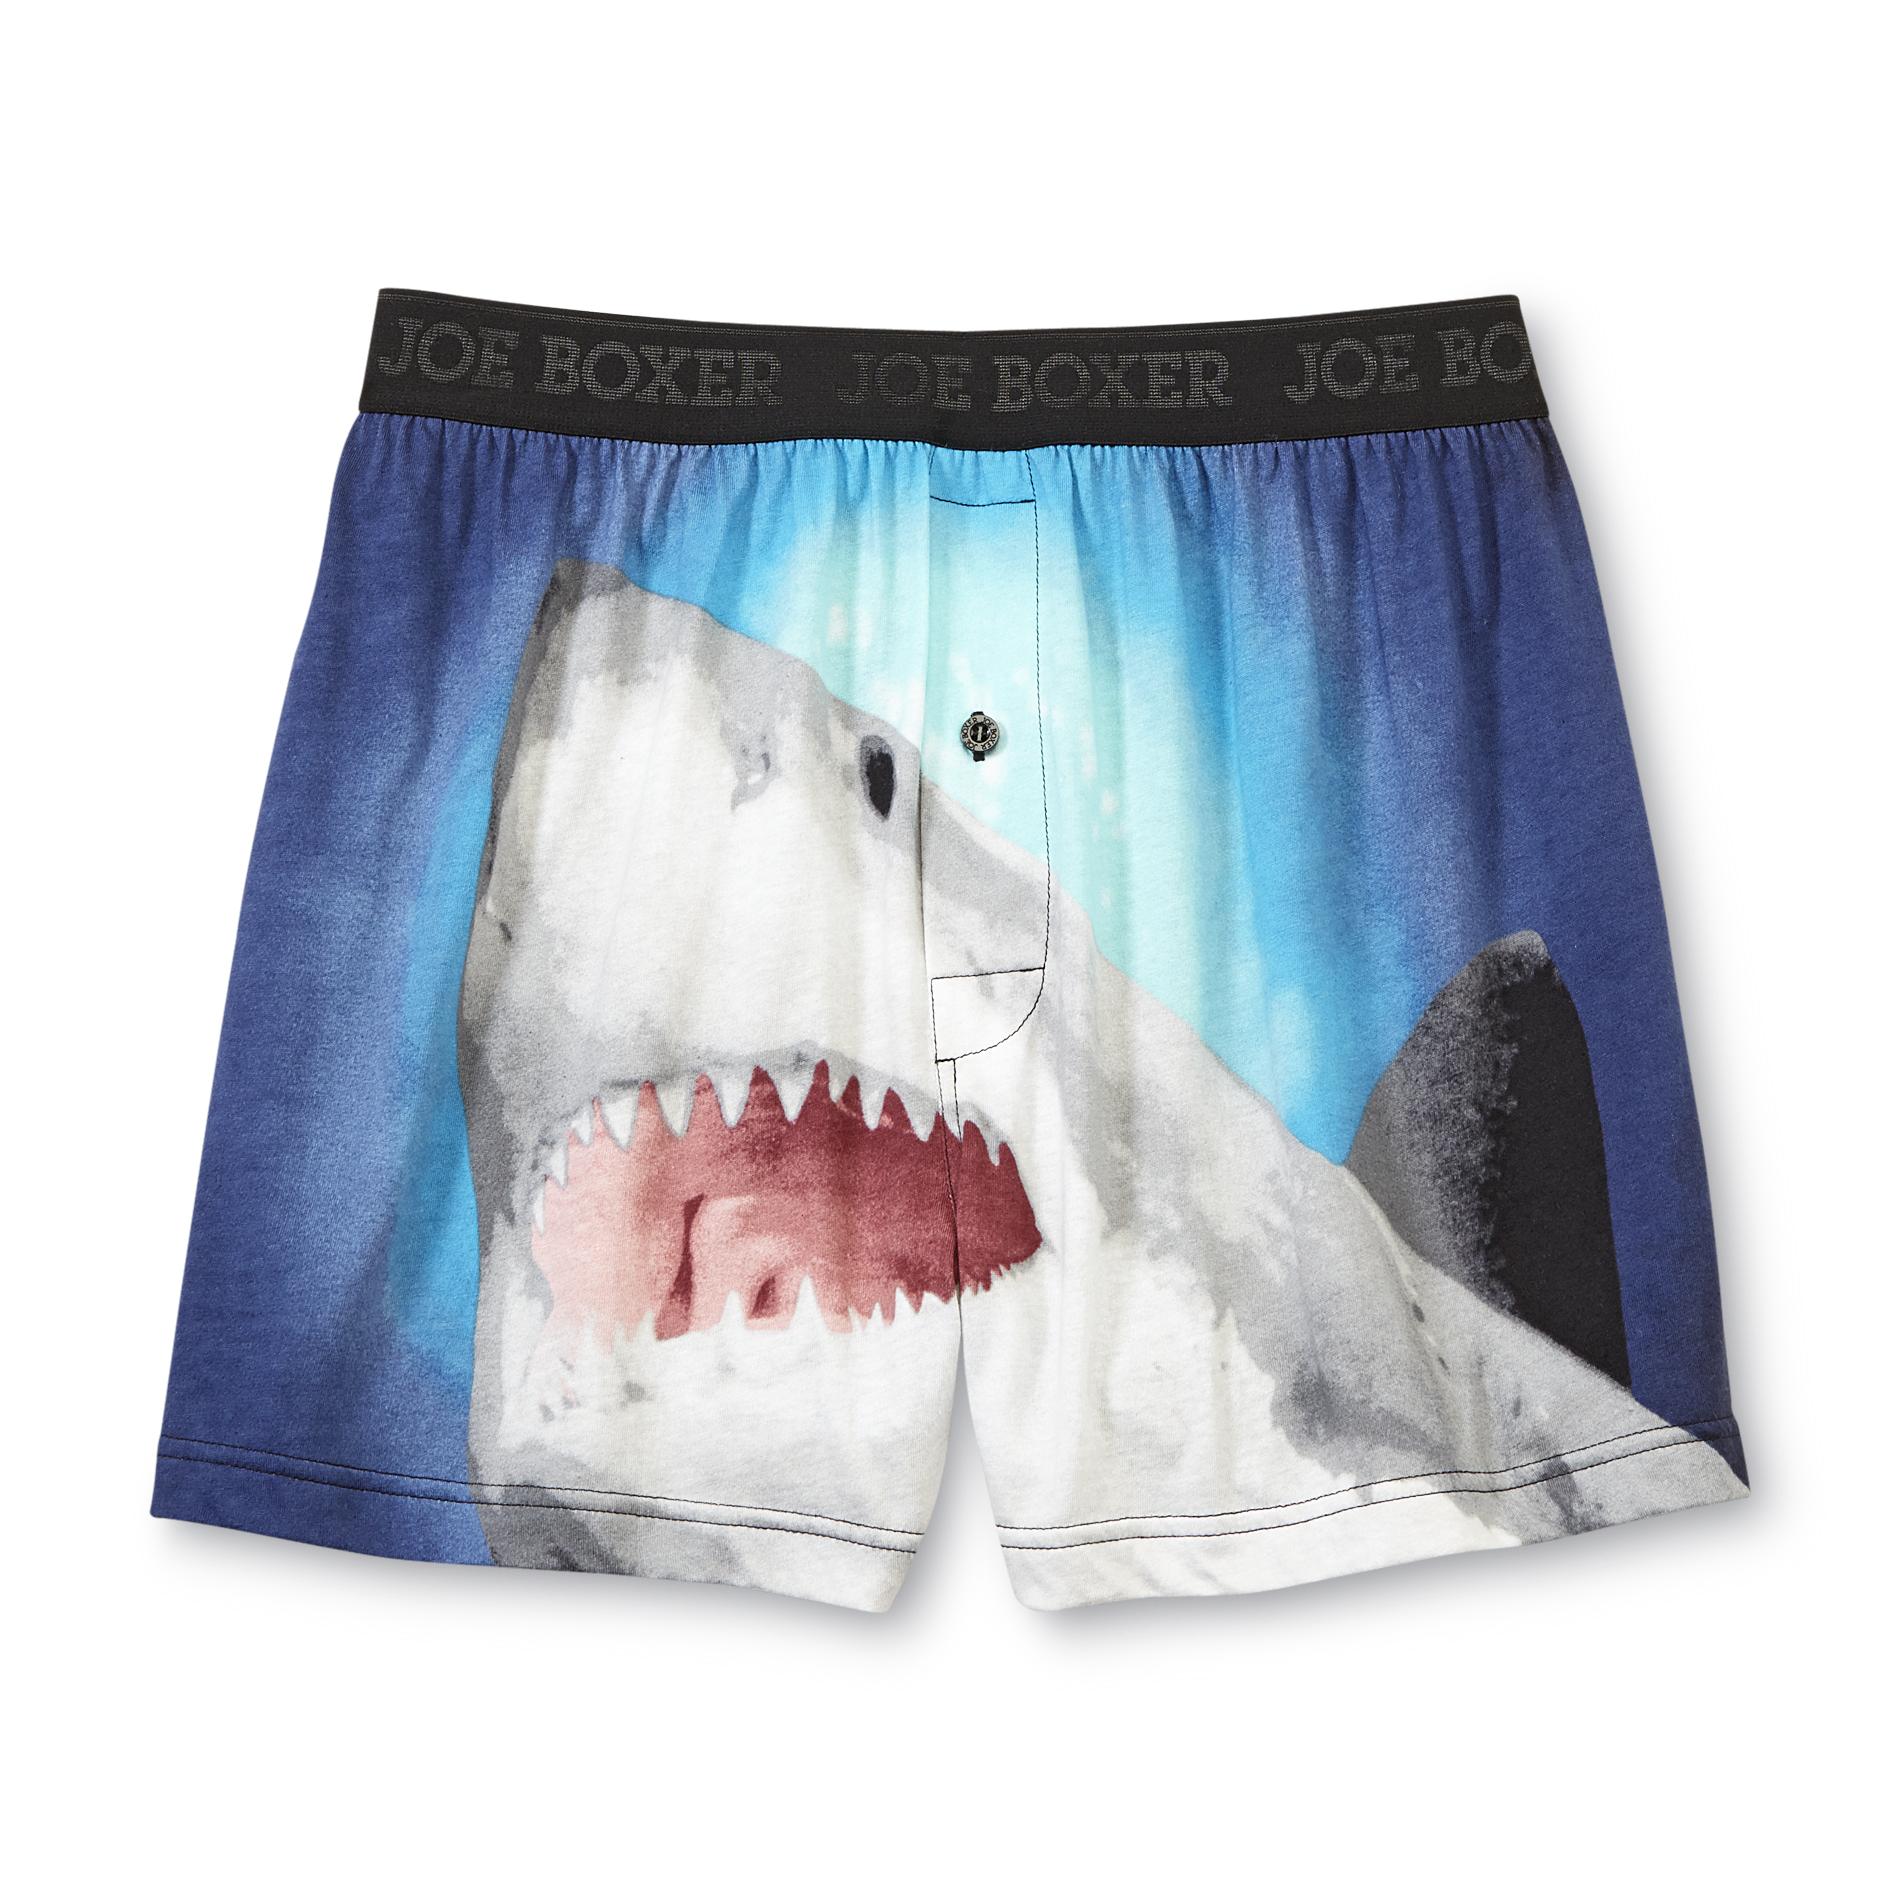 Joe Boxer Men's Knit Boxer Shorts - Shark